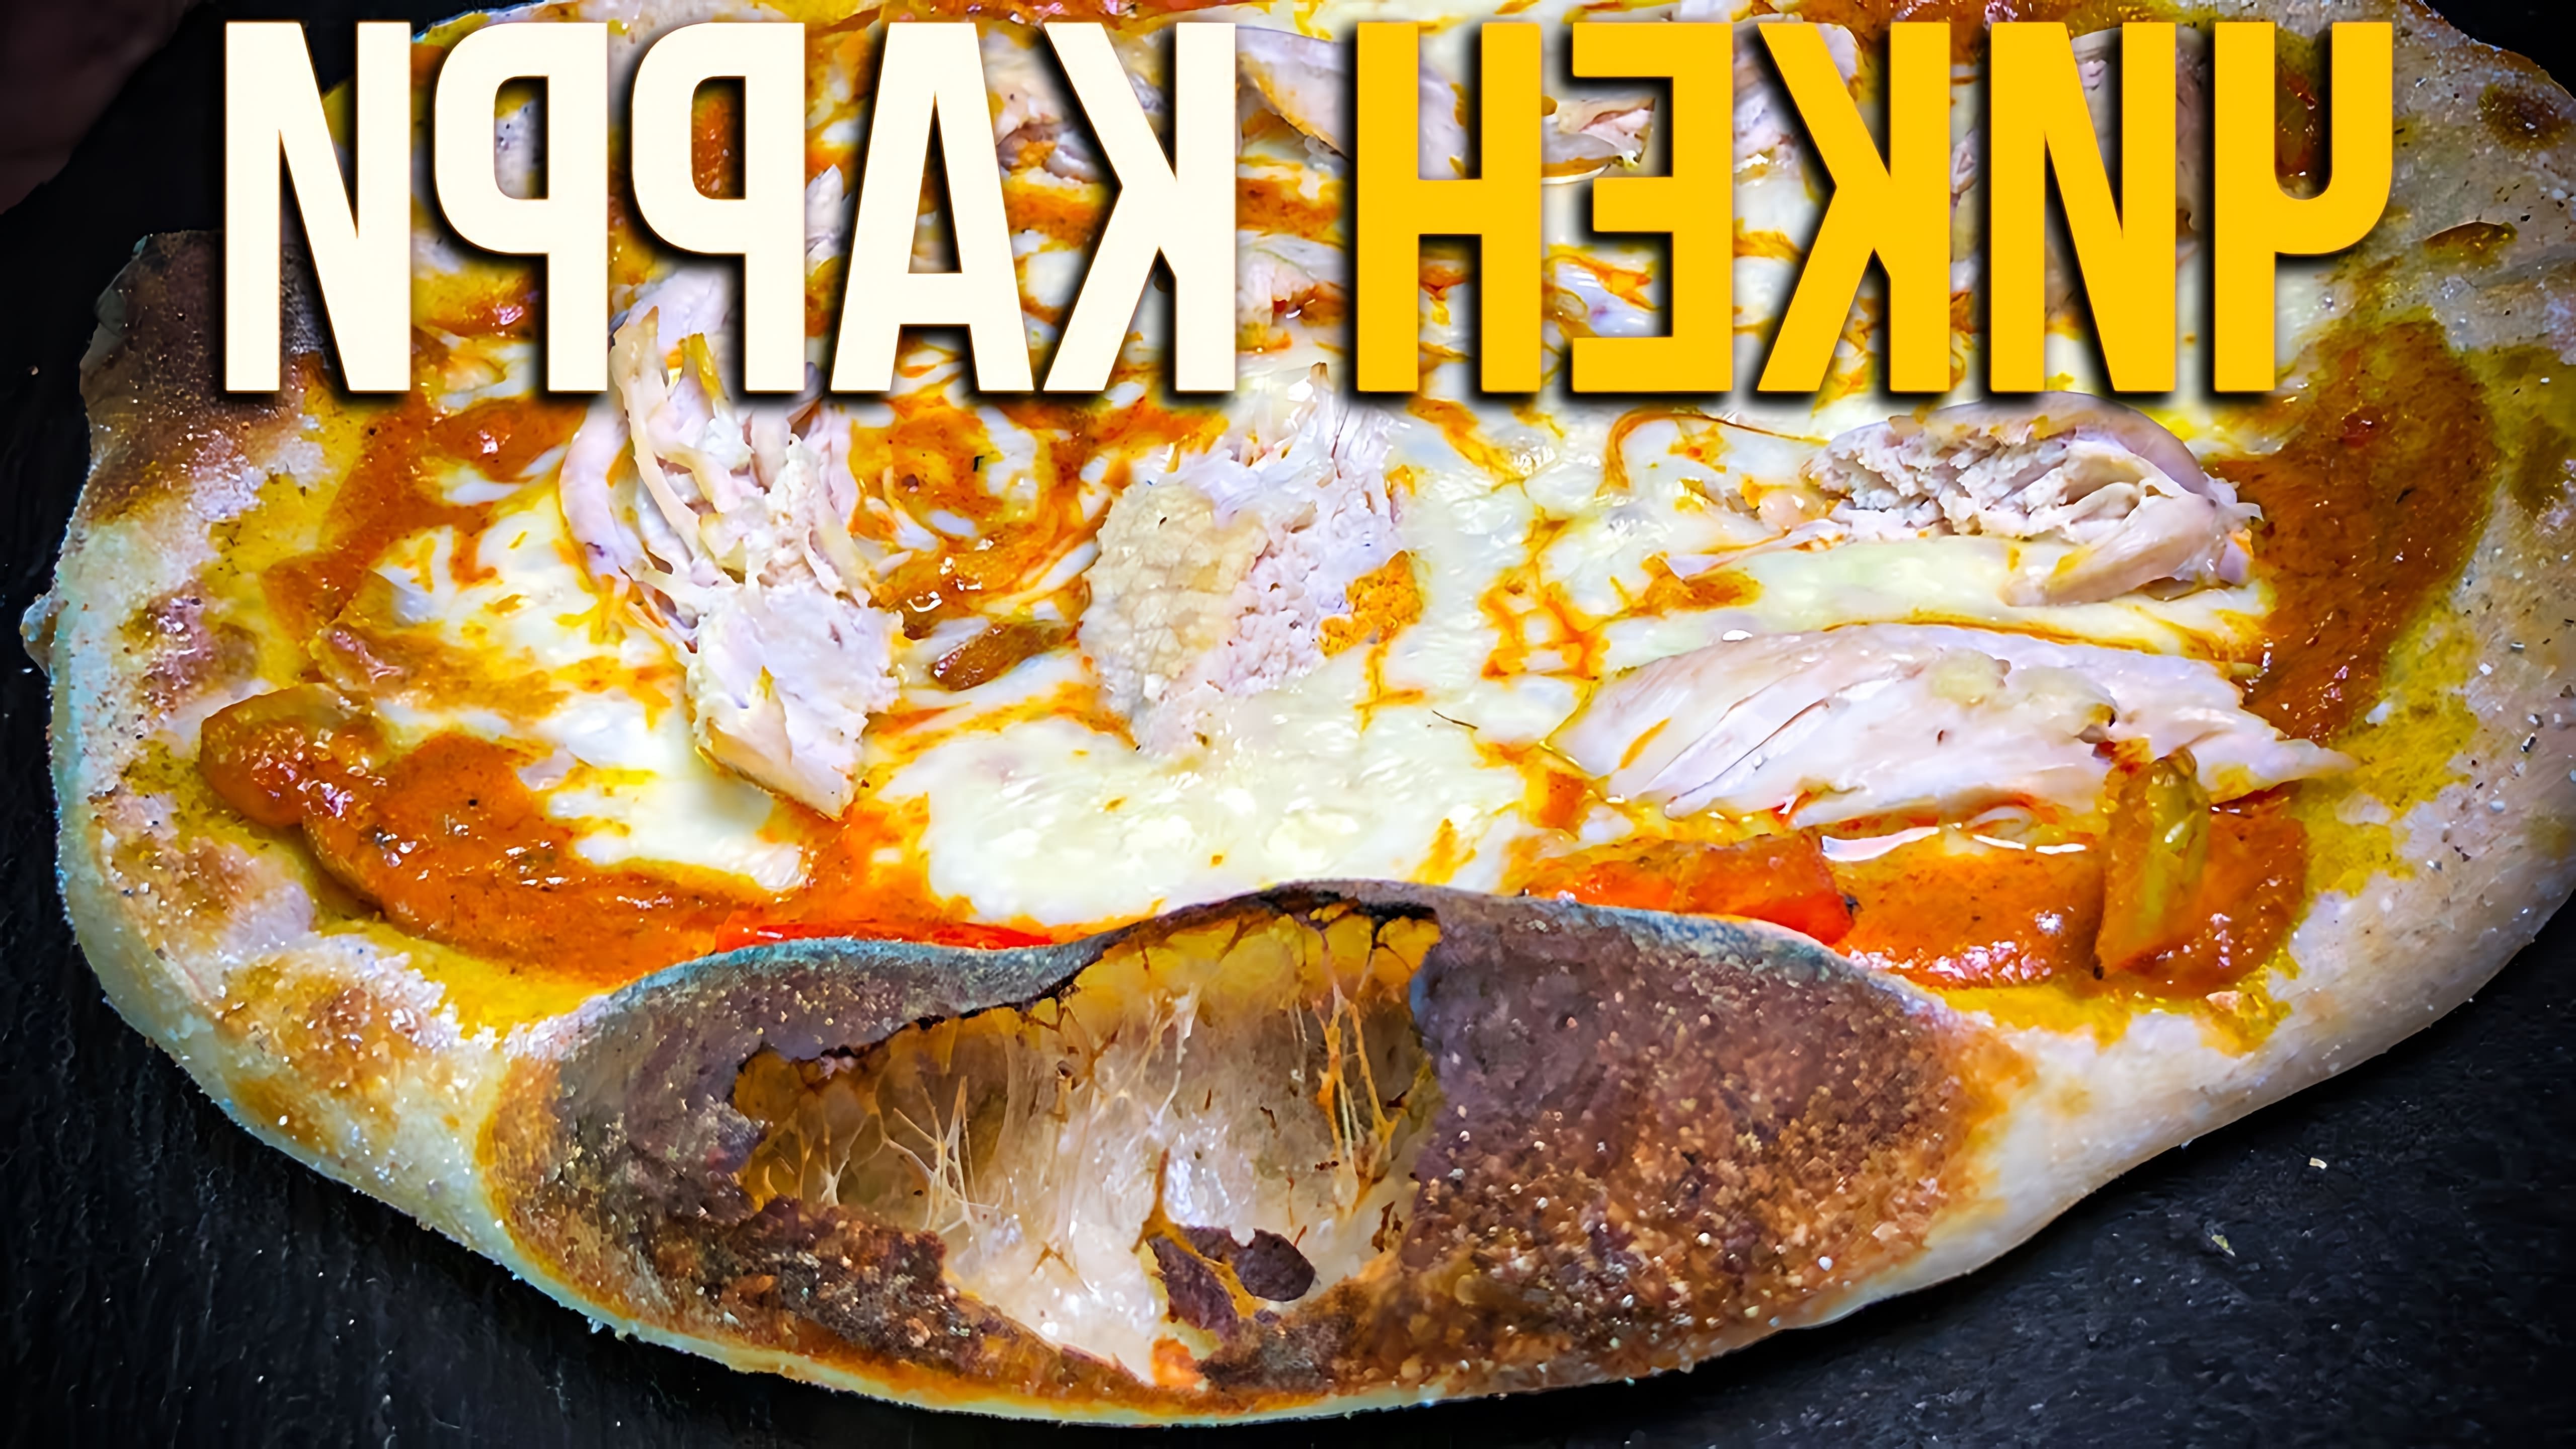 В этом видео демонстрируется рецепт приготовления пиццы с соусом карри и курицей